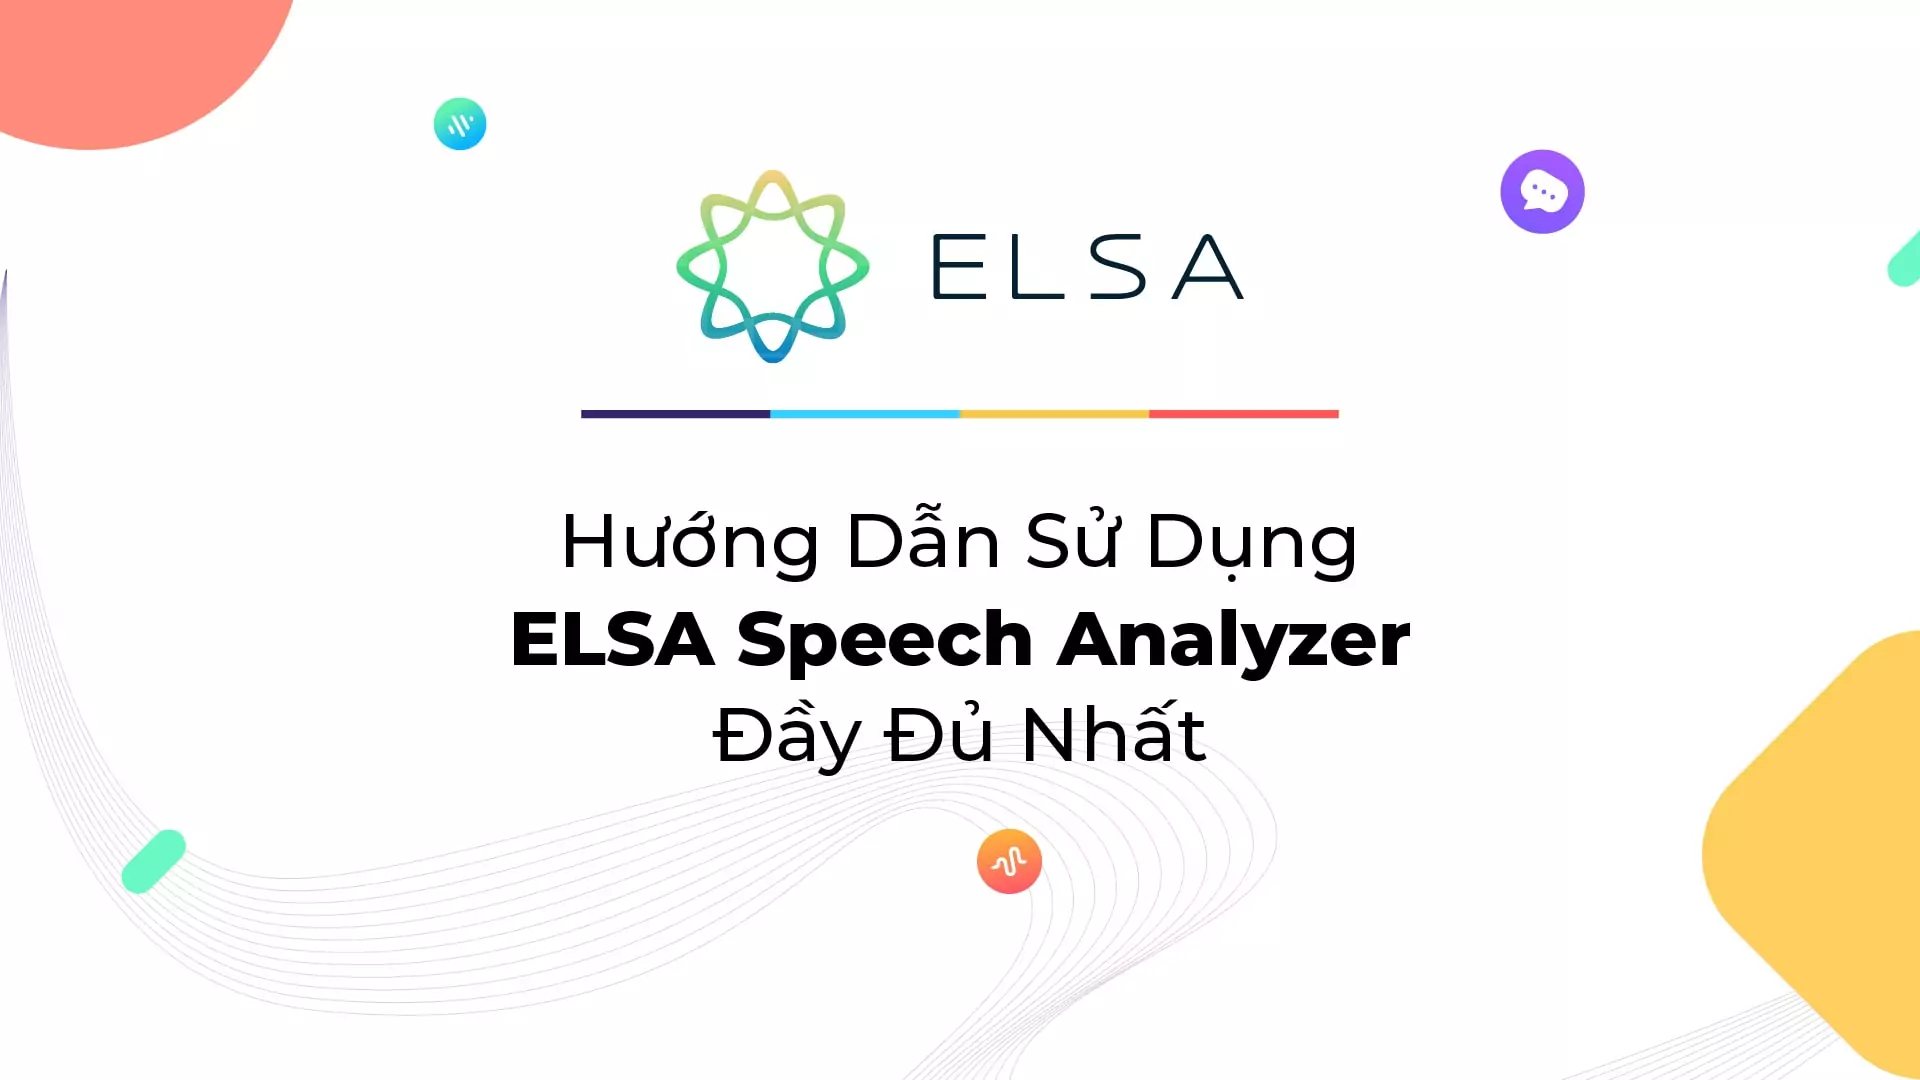 Hướng dẫn sử dụng ELSA Speech Analyzer đầy đủ nhất